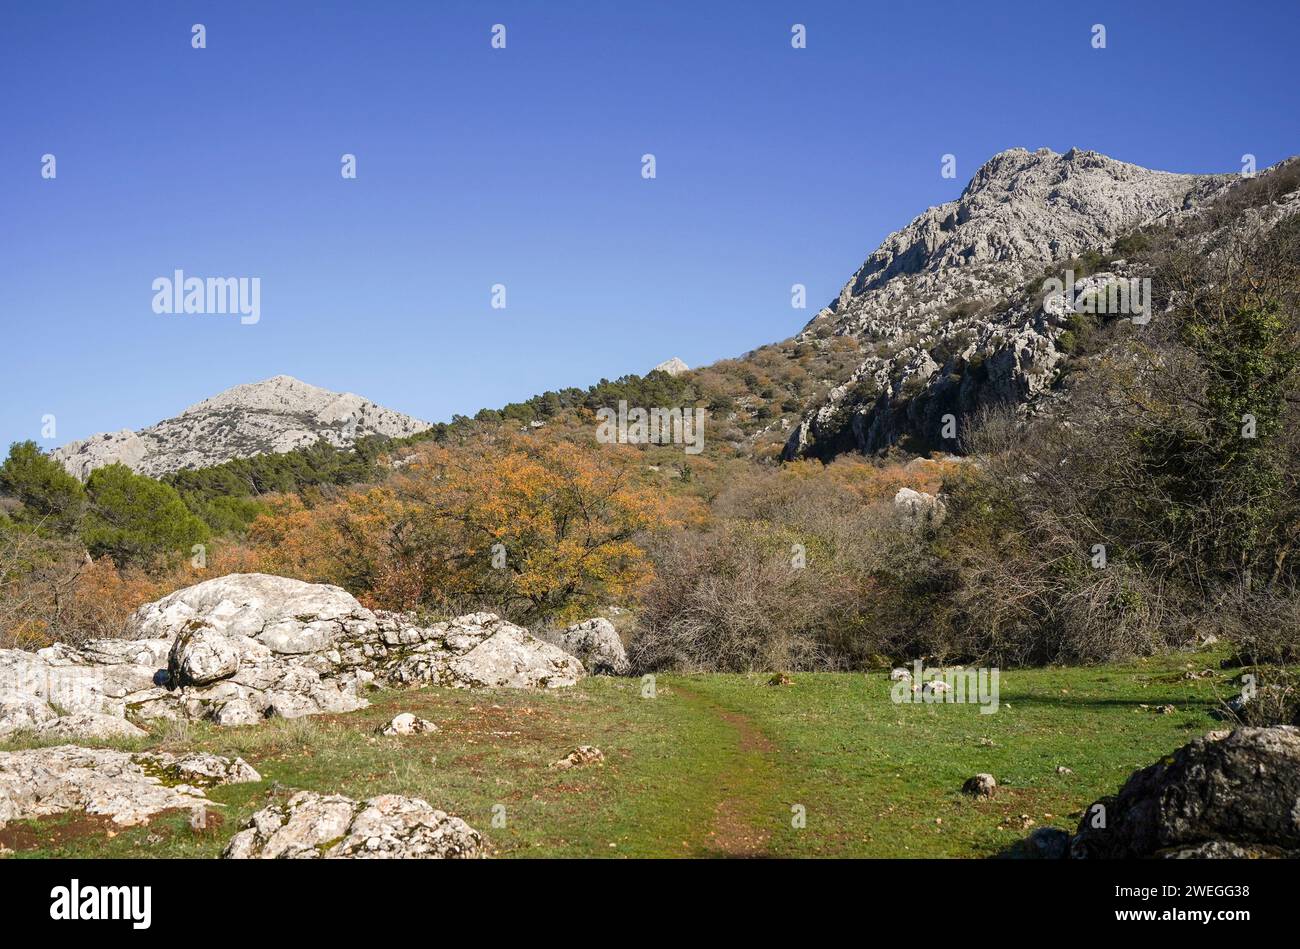 Landschaftlich reizvolle Landschaft mit Kalksteinformationen in Sierra de Camarolos, Hondonero, Andalusien, Südspanien Stockfoto